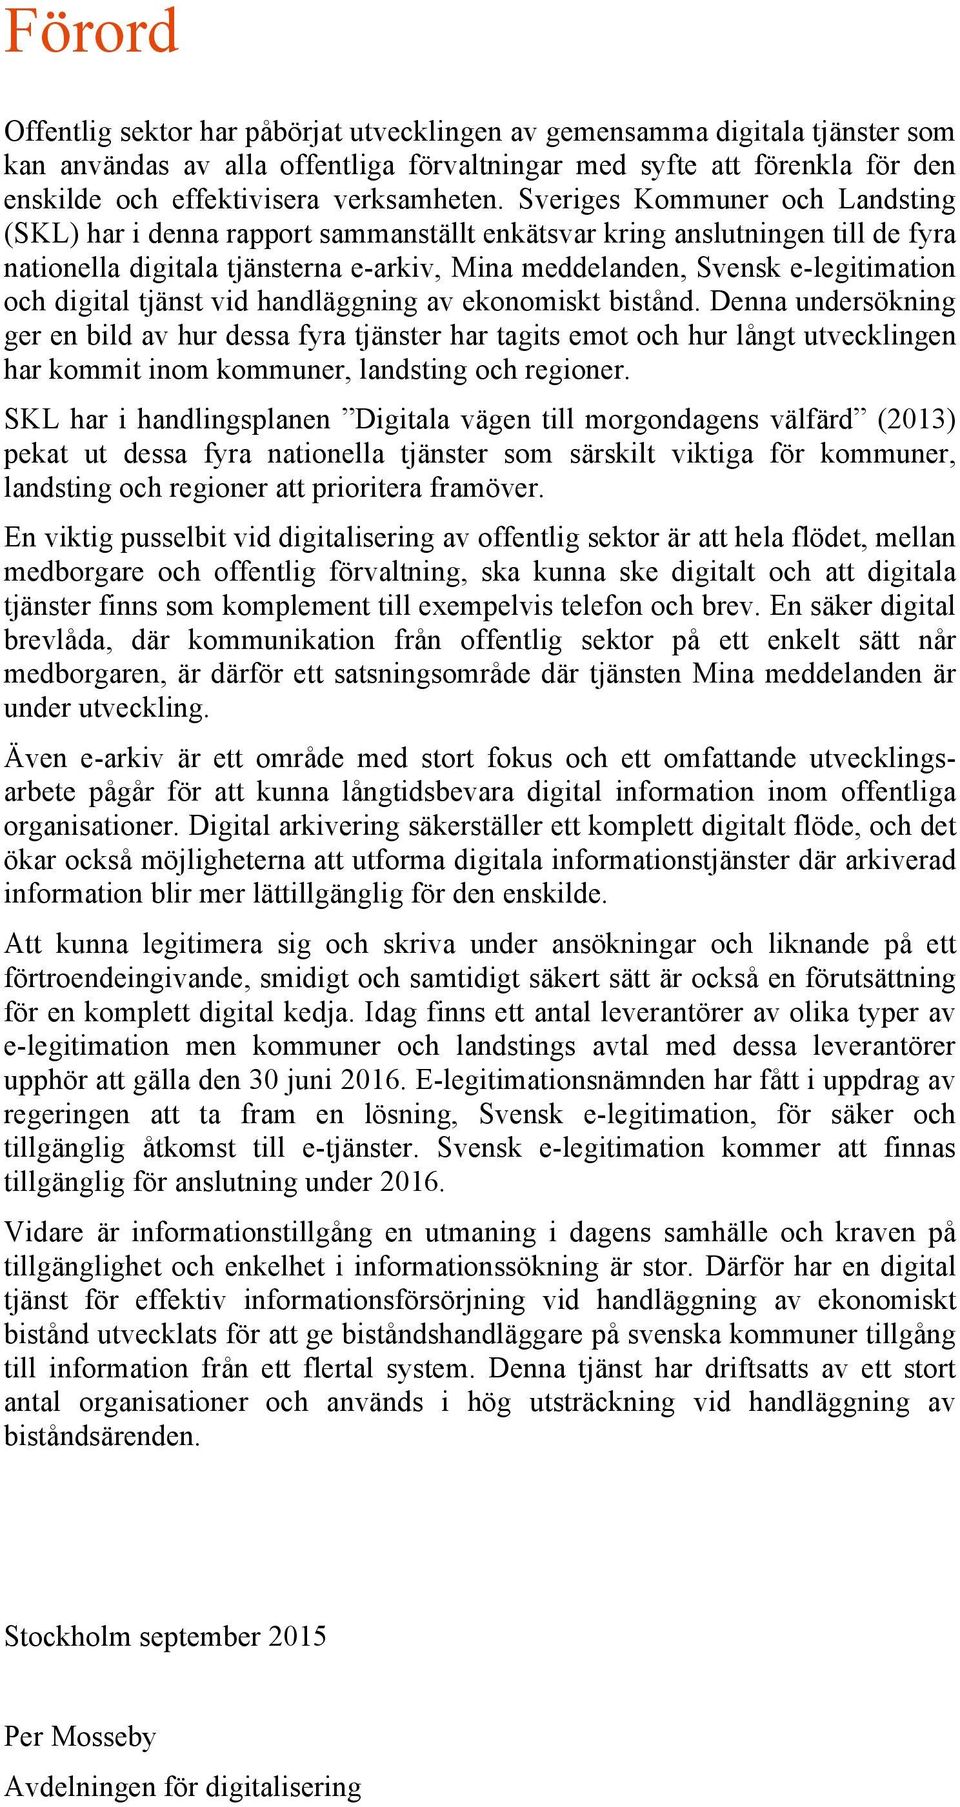 Sveriges Kommuner och Landsting (SKL) har i denna rapport sammanställt enkätsvar kring anslutningen till de fyra nationella digitala tjänsterna e-arkiv, Mina meddelanden, Svensk e-legitimation och